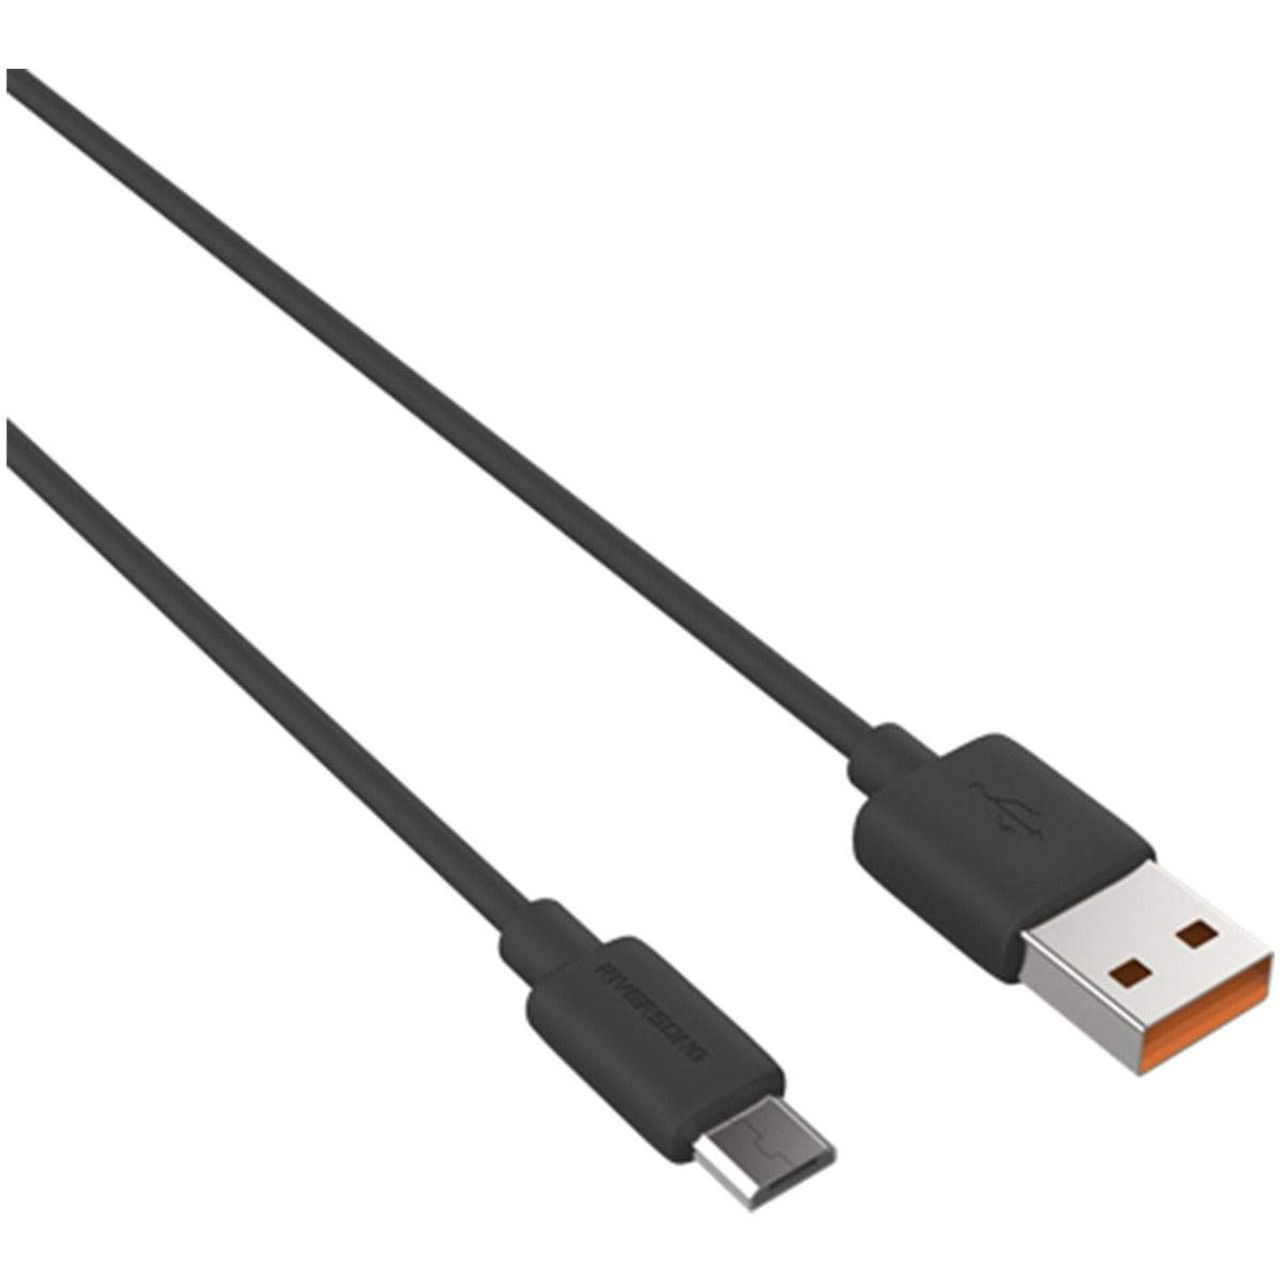 Ratón NGS Easy Betta cable USB, zurdos y diestros